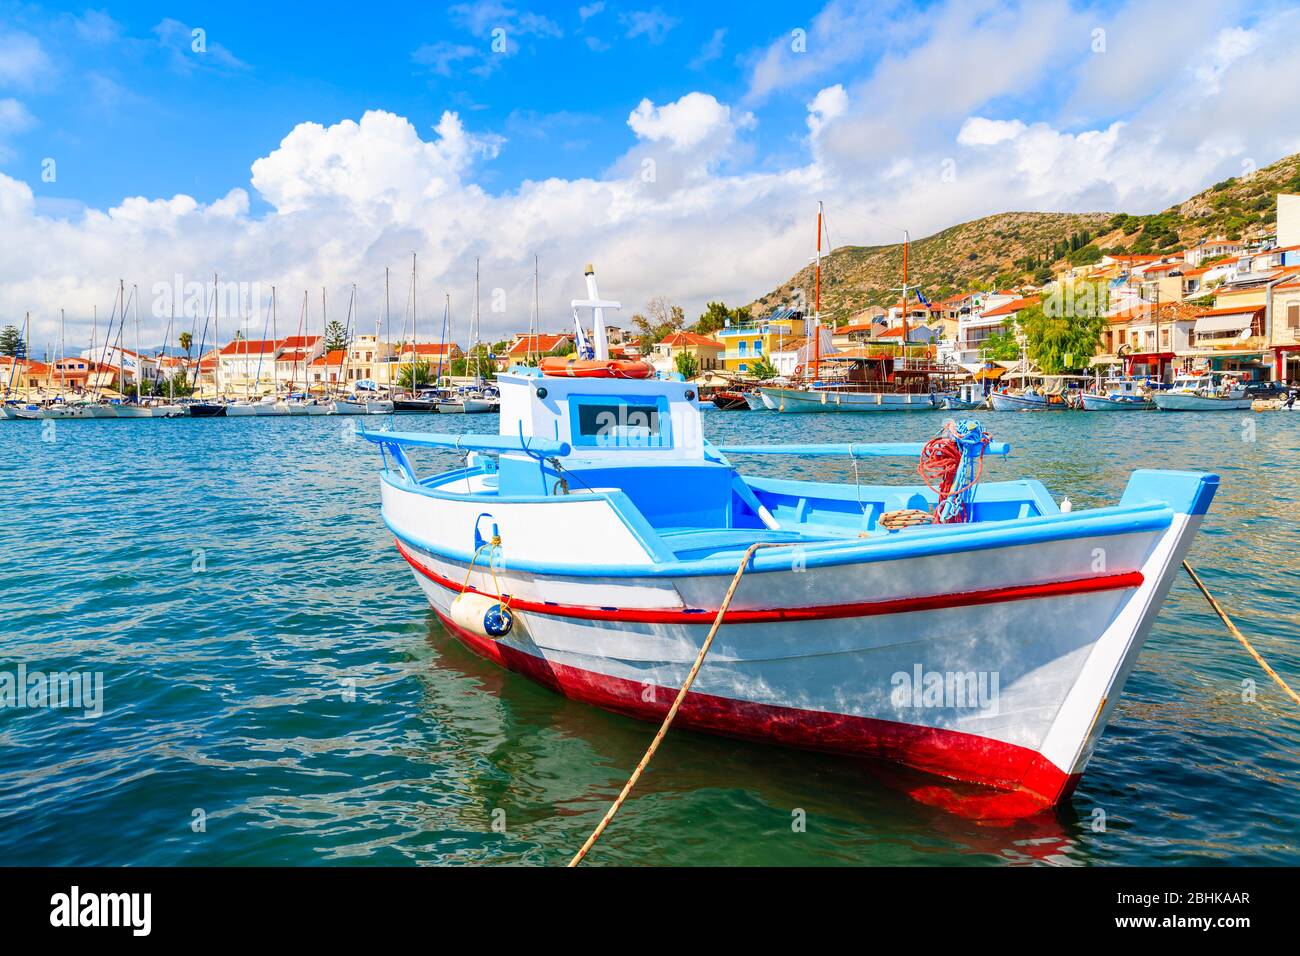 Tipica barca colorata da pesca nel porto di Pitagorion, isola di Samos, mar Egeo, Grecia Foto Stock